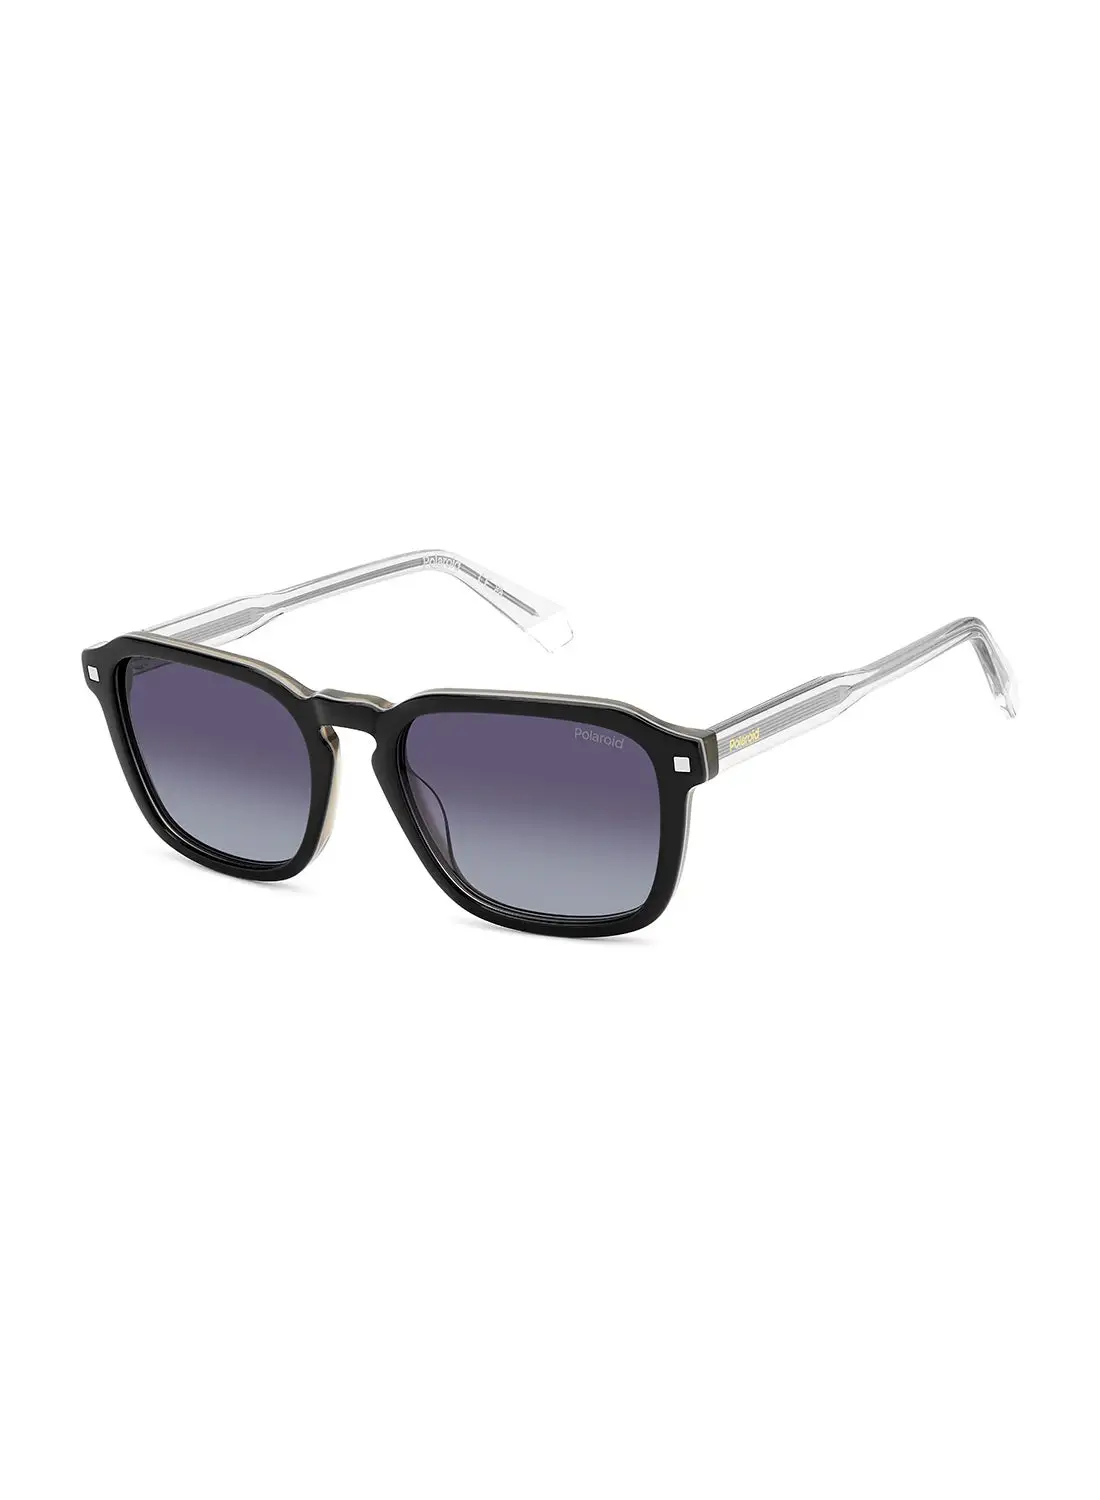 Polaroid Unisex Polarized Rectangular Sunglasses - Pld 4156/S/X Black Millimeter - Lens Size: 53 Mm